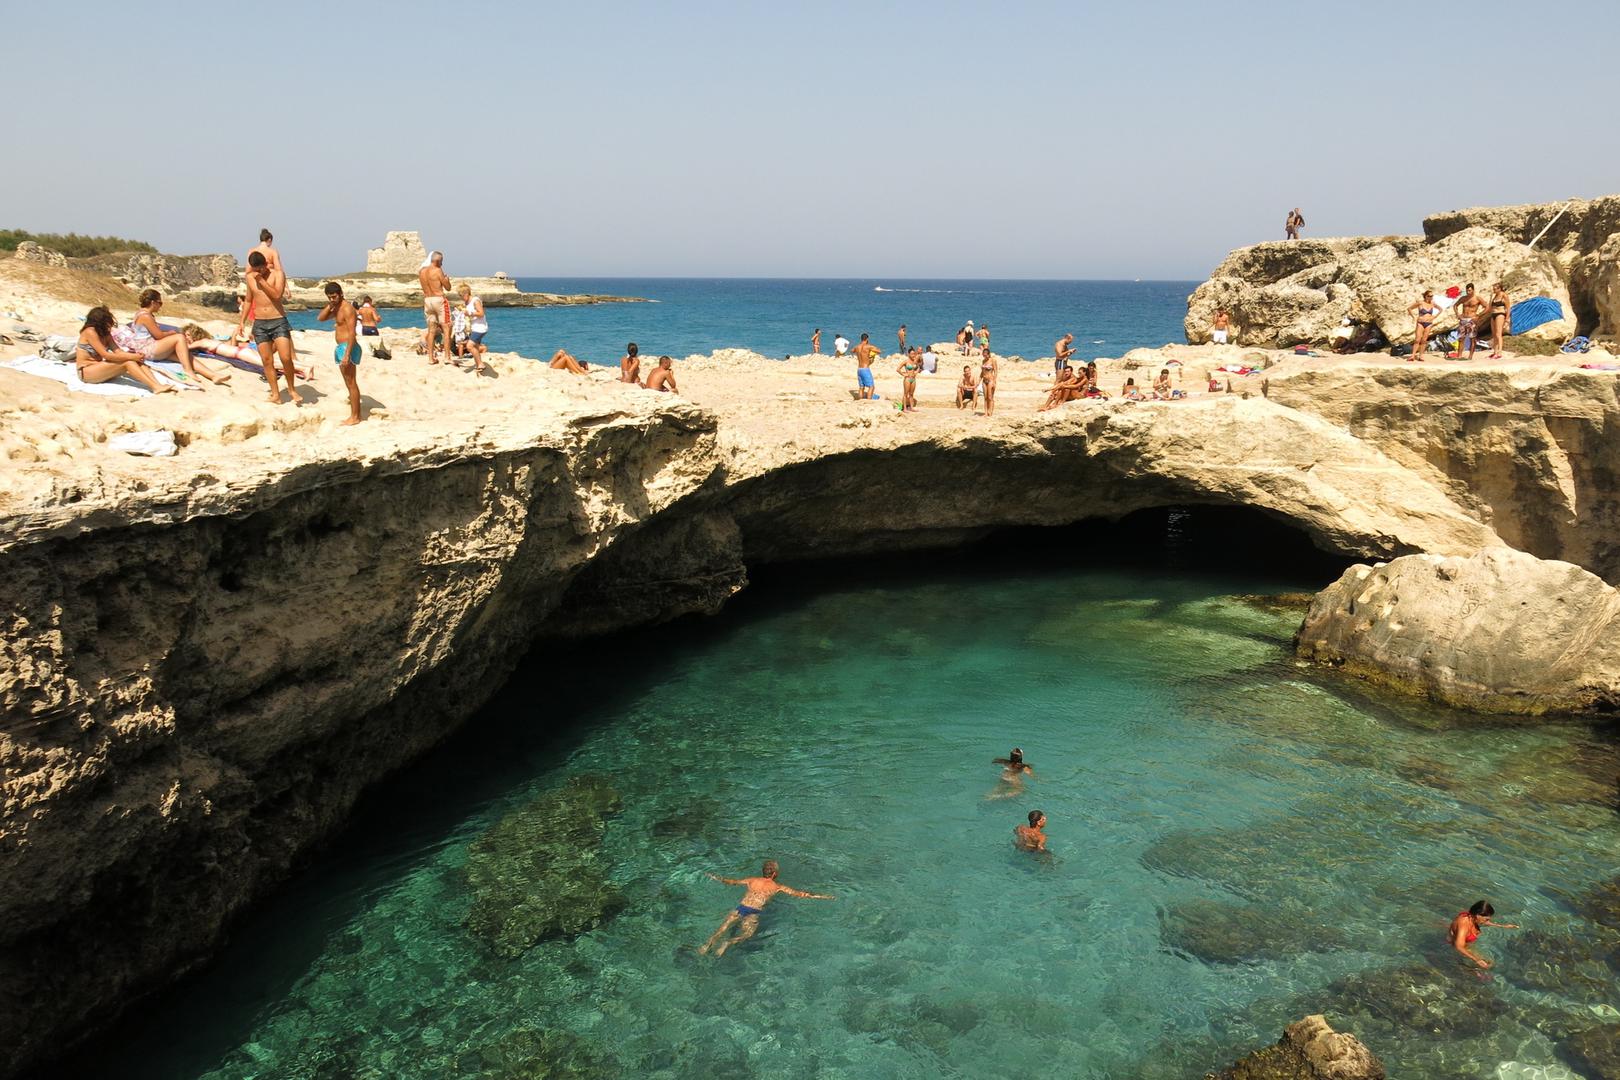 Ova prirodna ljepotica, u prijevodu s talijanskog "Pećina poezije", omiljeno je mjesto za plivanje brojnih turista.